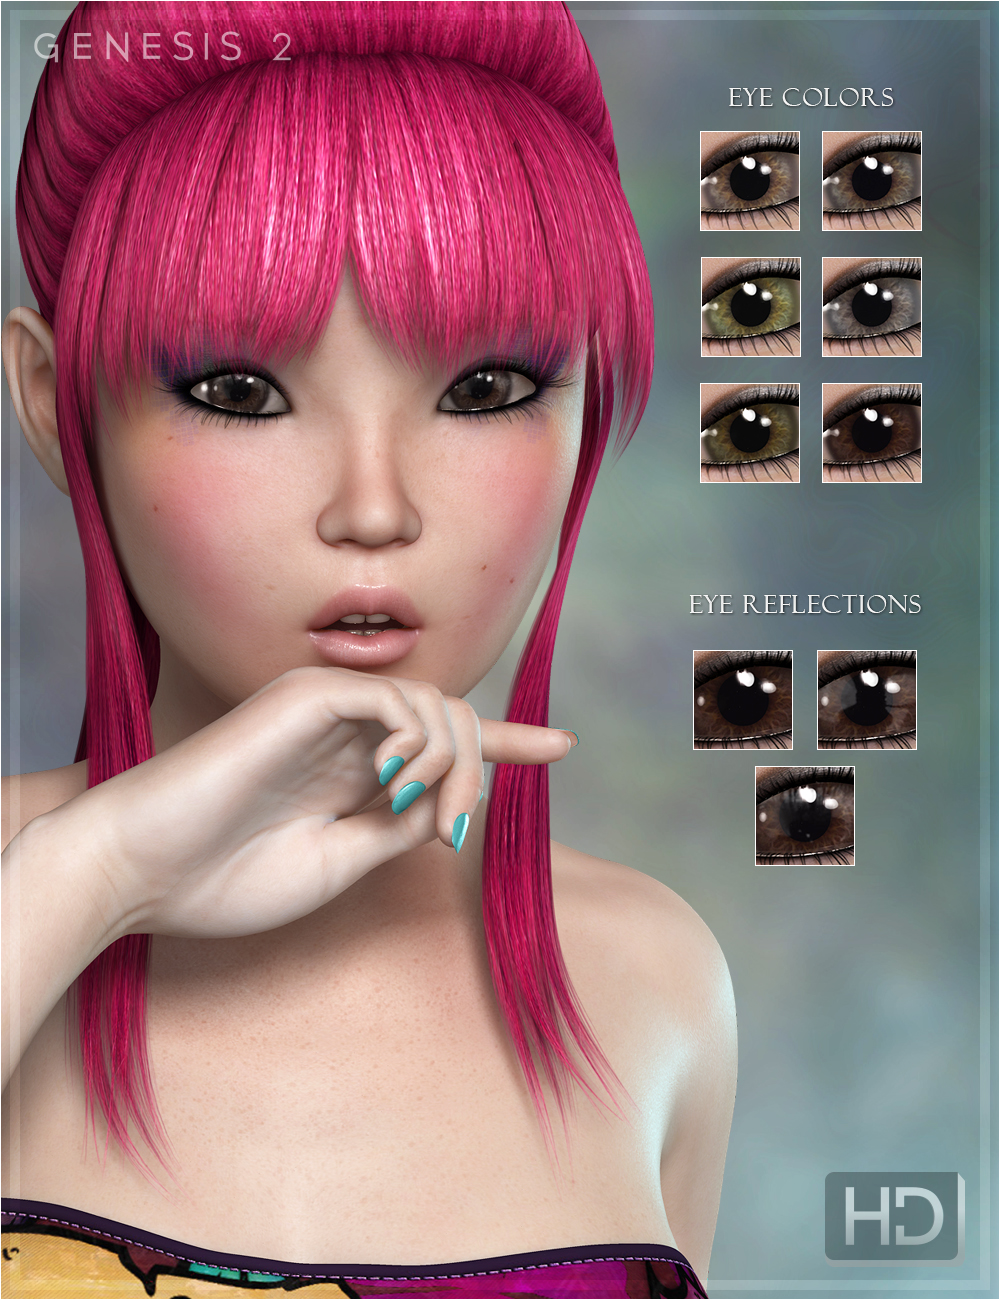 Amelie for Keiko 6 HD by: OziChickFred Winkler Art, 3D Models by Daz 3D